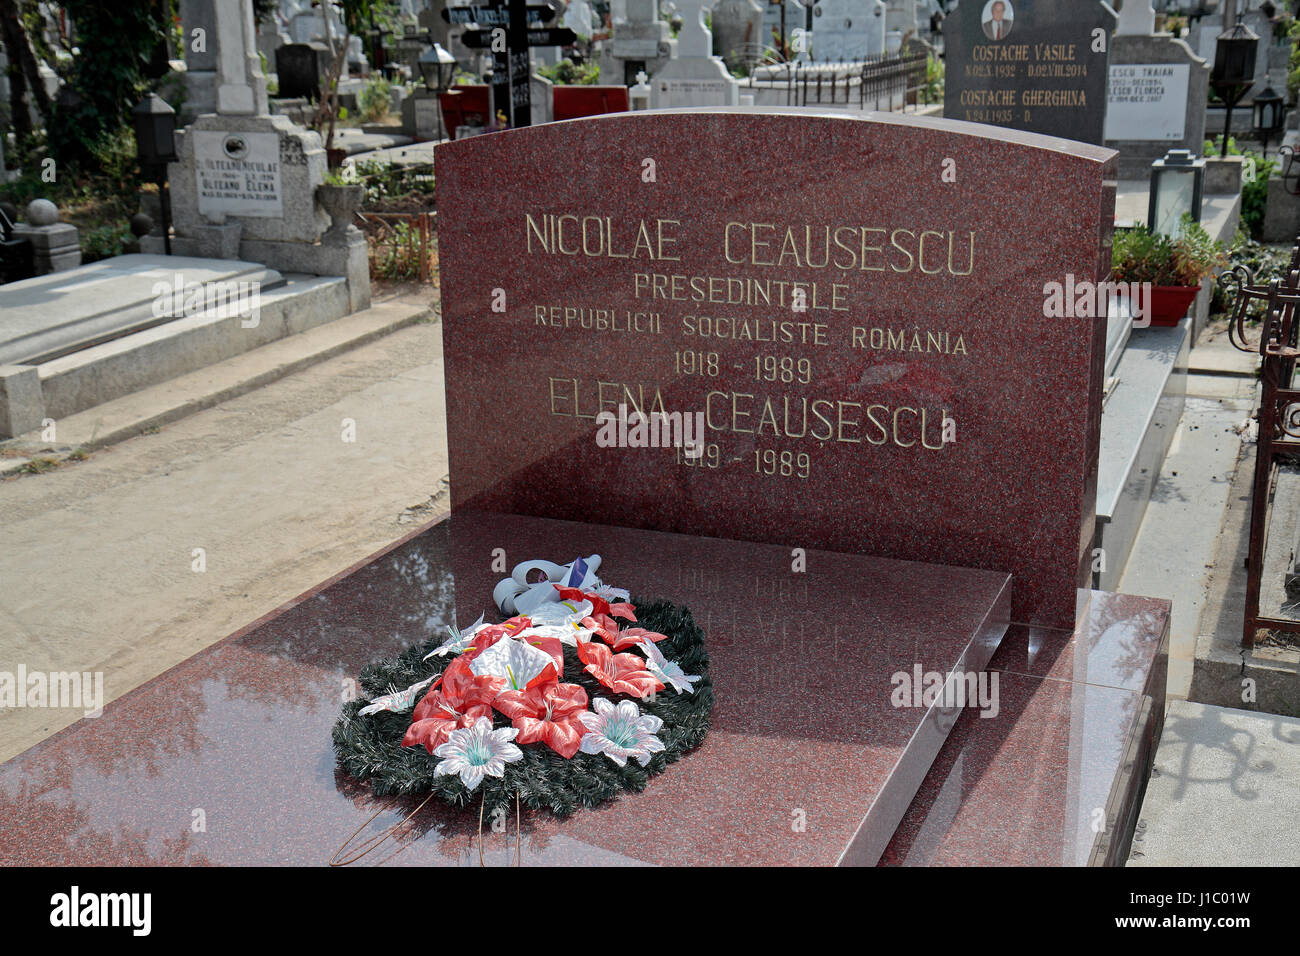 La tombe de Nicolae et Elena Ceausescu, la Roumanie l'ancien dictateur pendant l'ère communiste, cimetière Ghencea, Bucarest, Roumanie. Banque D'Images